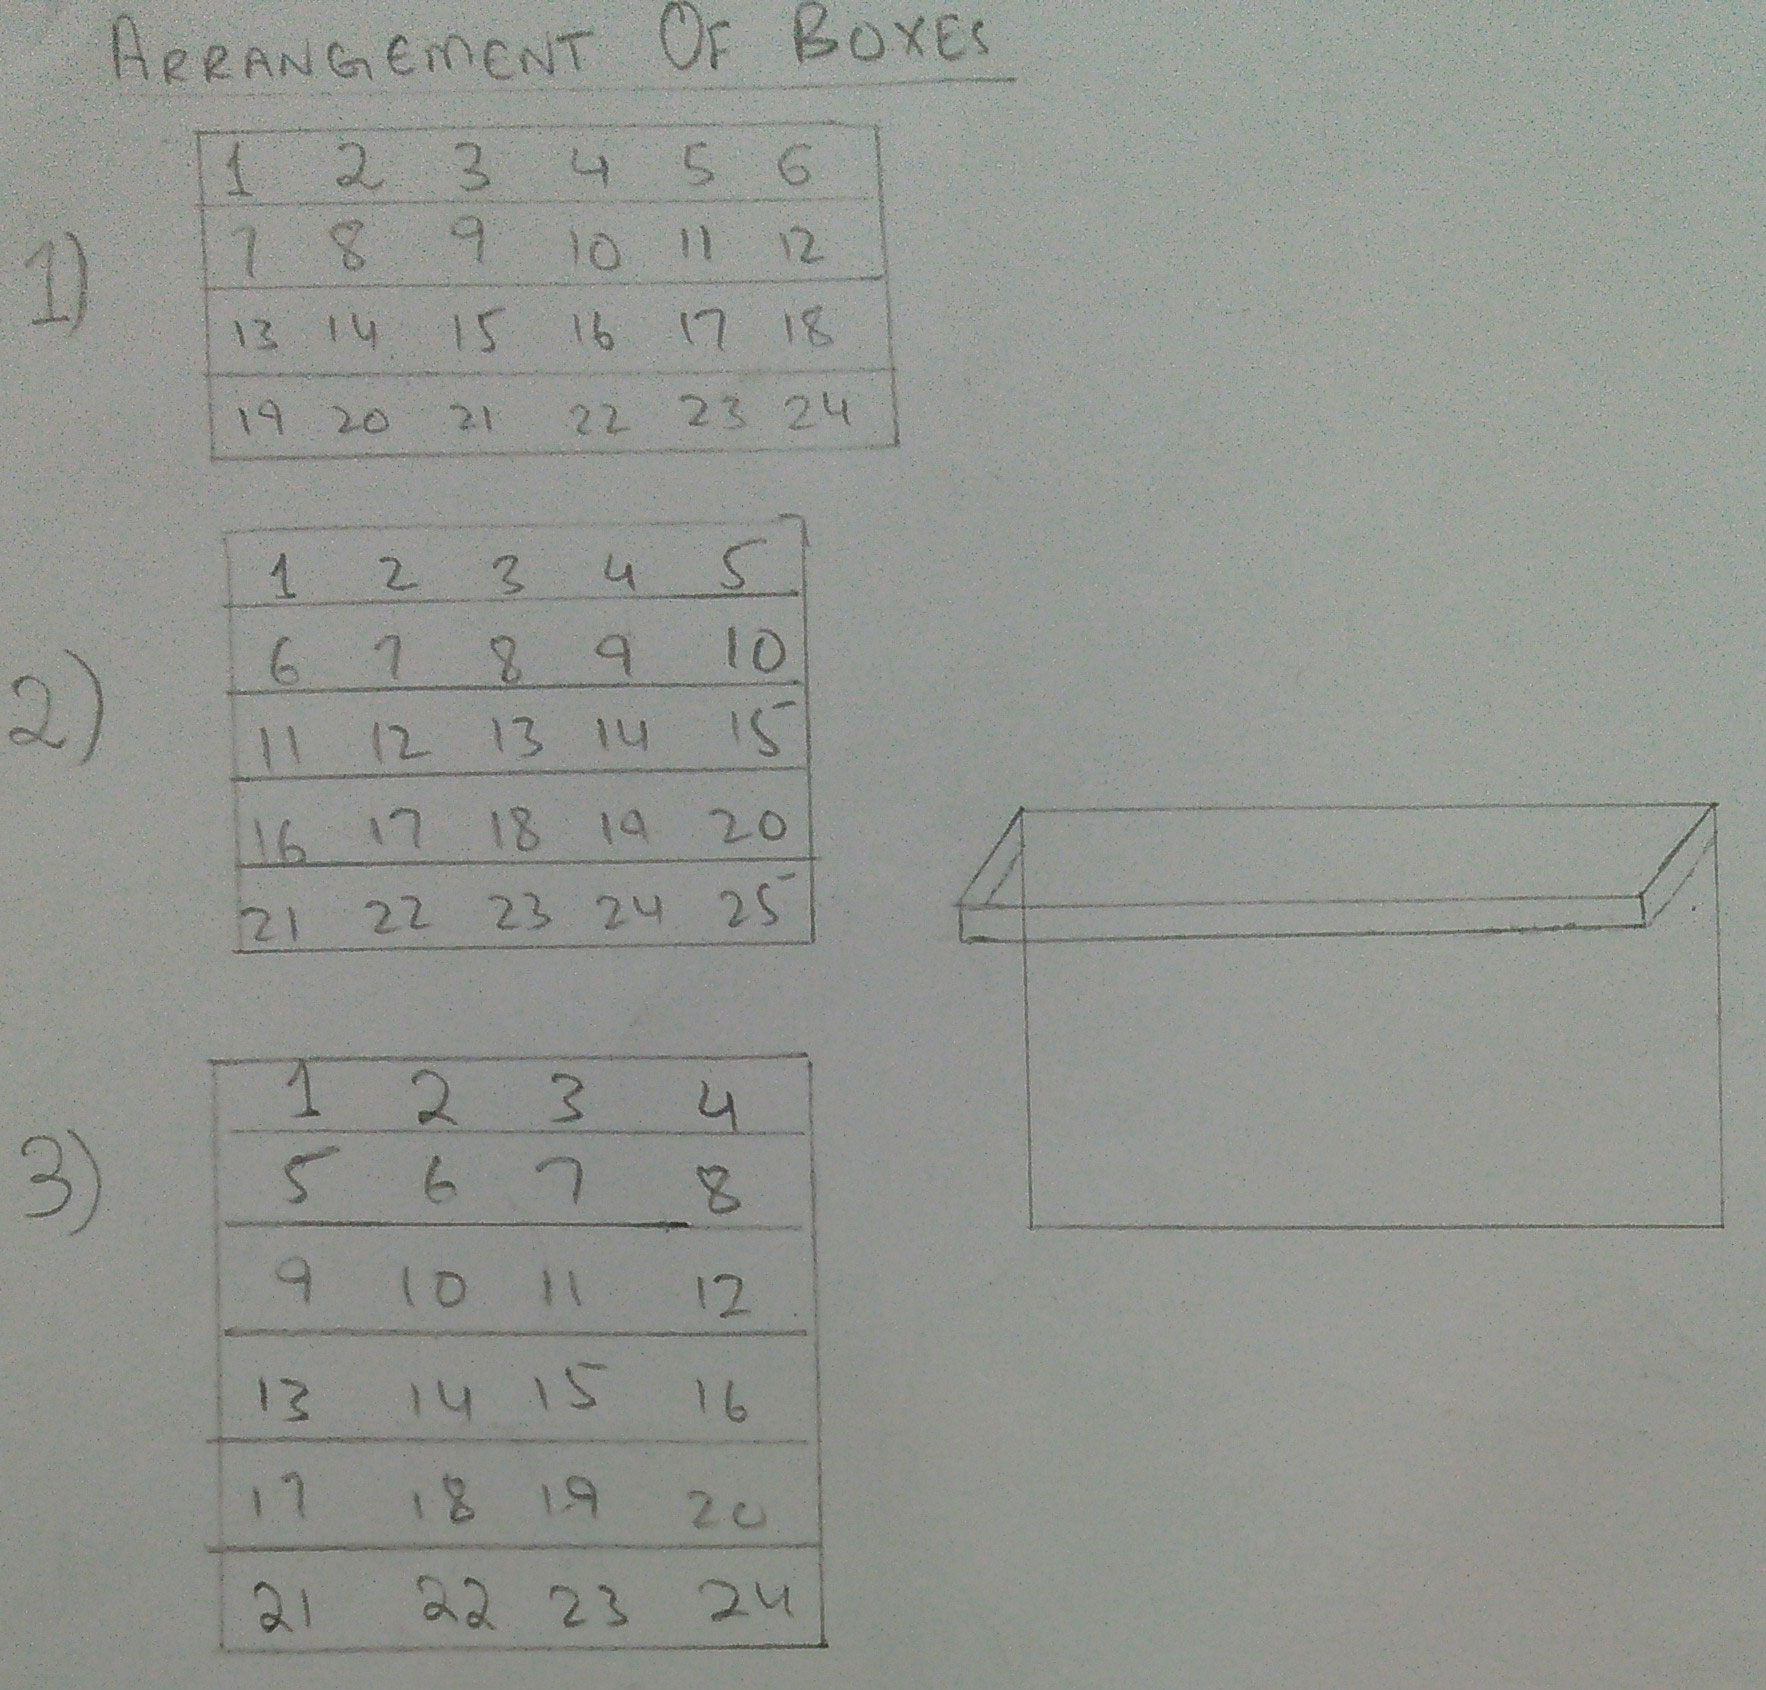 Ways of Arrangemet of boxes